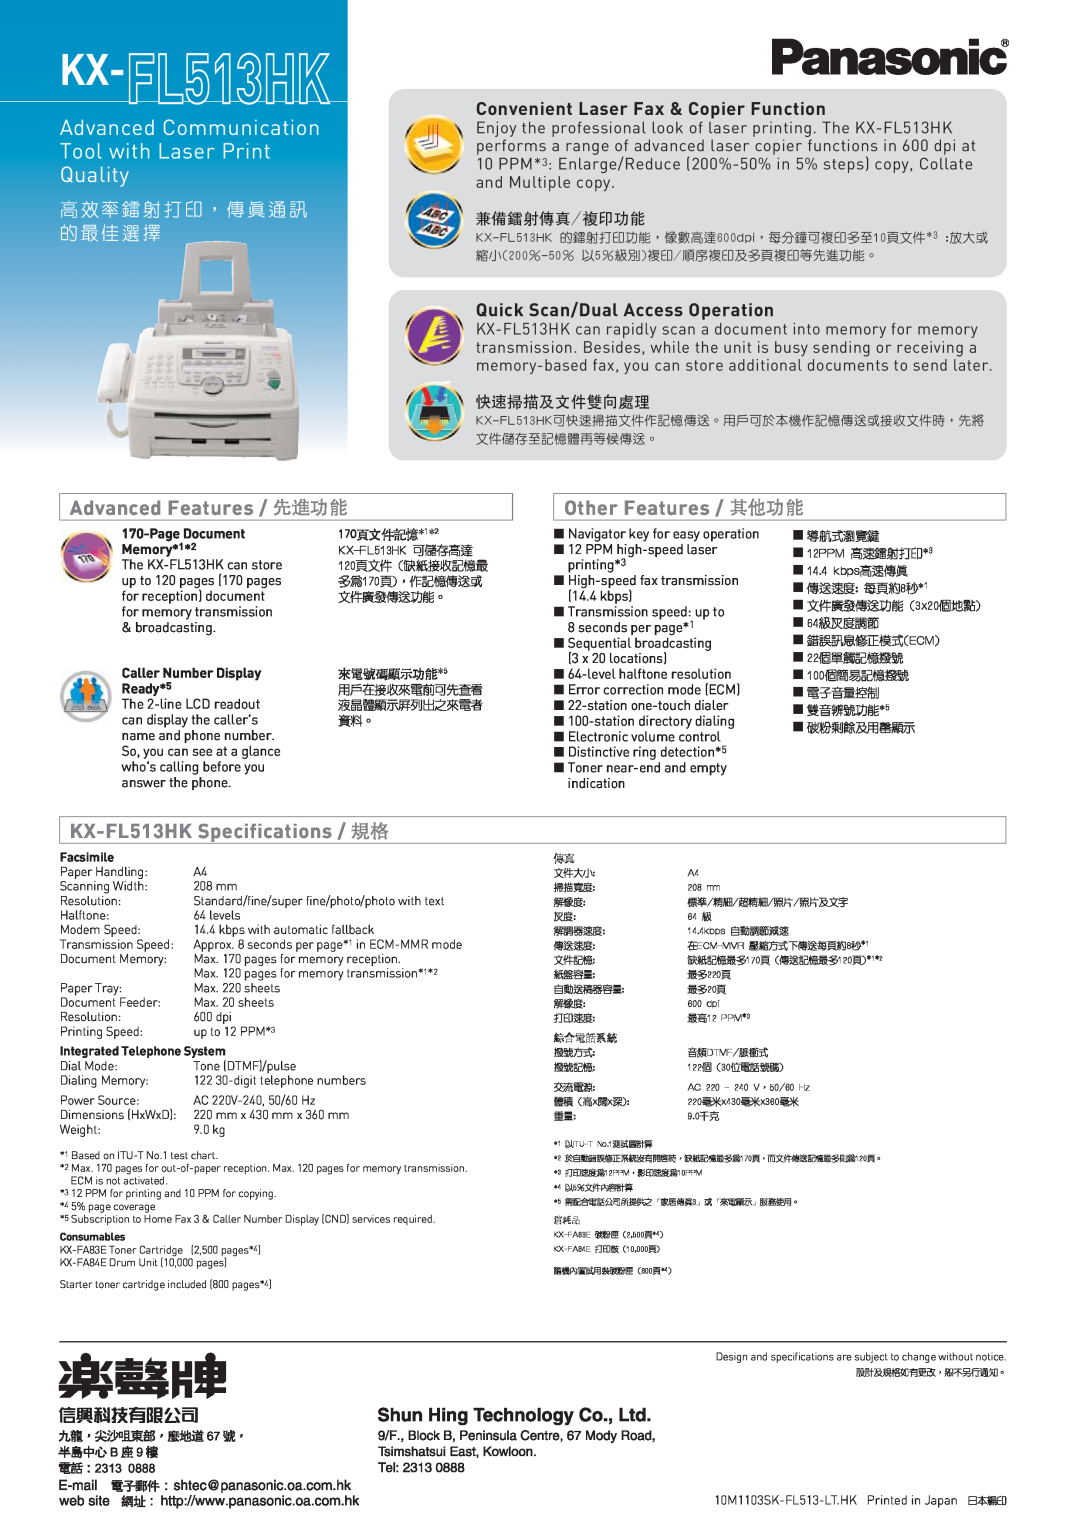 Panasonic KX-FL513HK manual 高 效 率 鐳 射 打 印 ， 傳 真 通 訊 的 最 佳 選 擇, Advanced Communication Tool with Laser Print Quality 